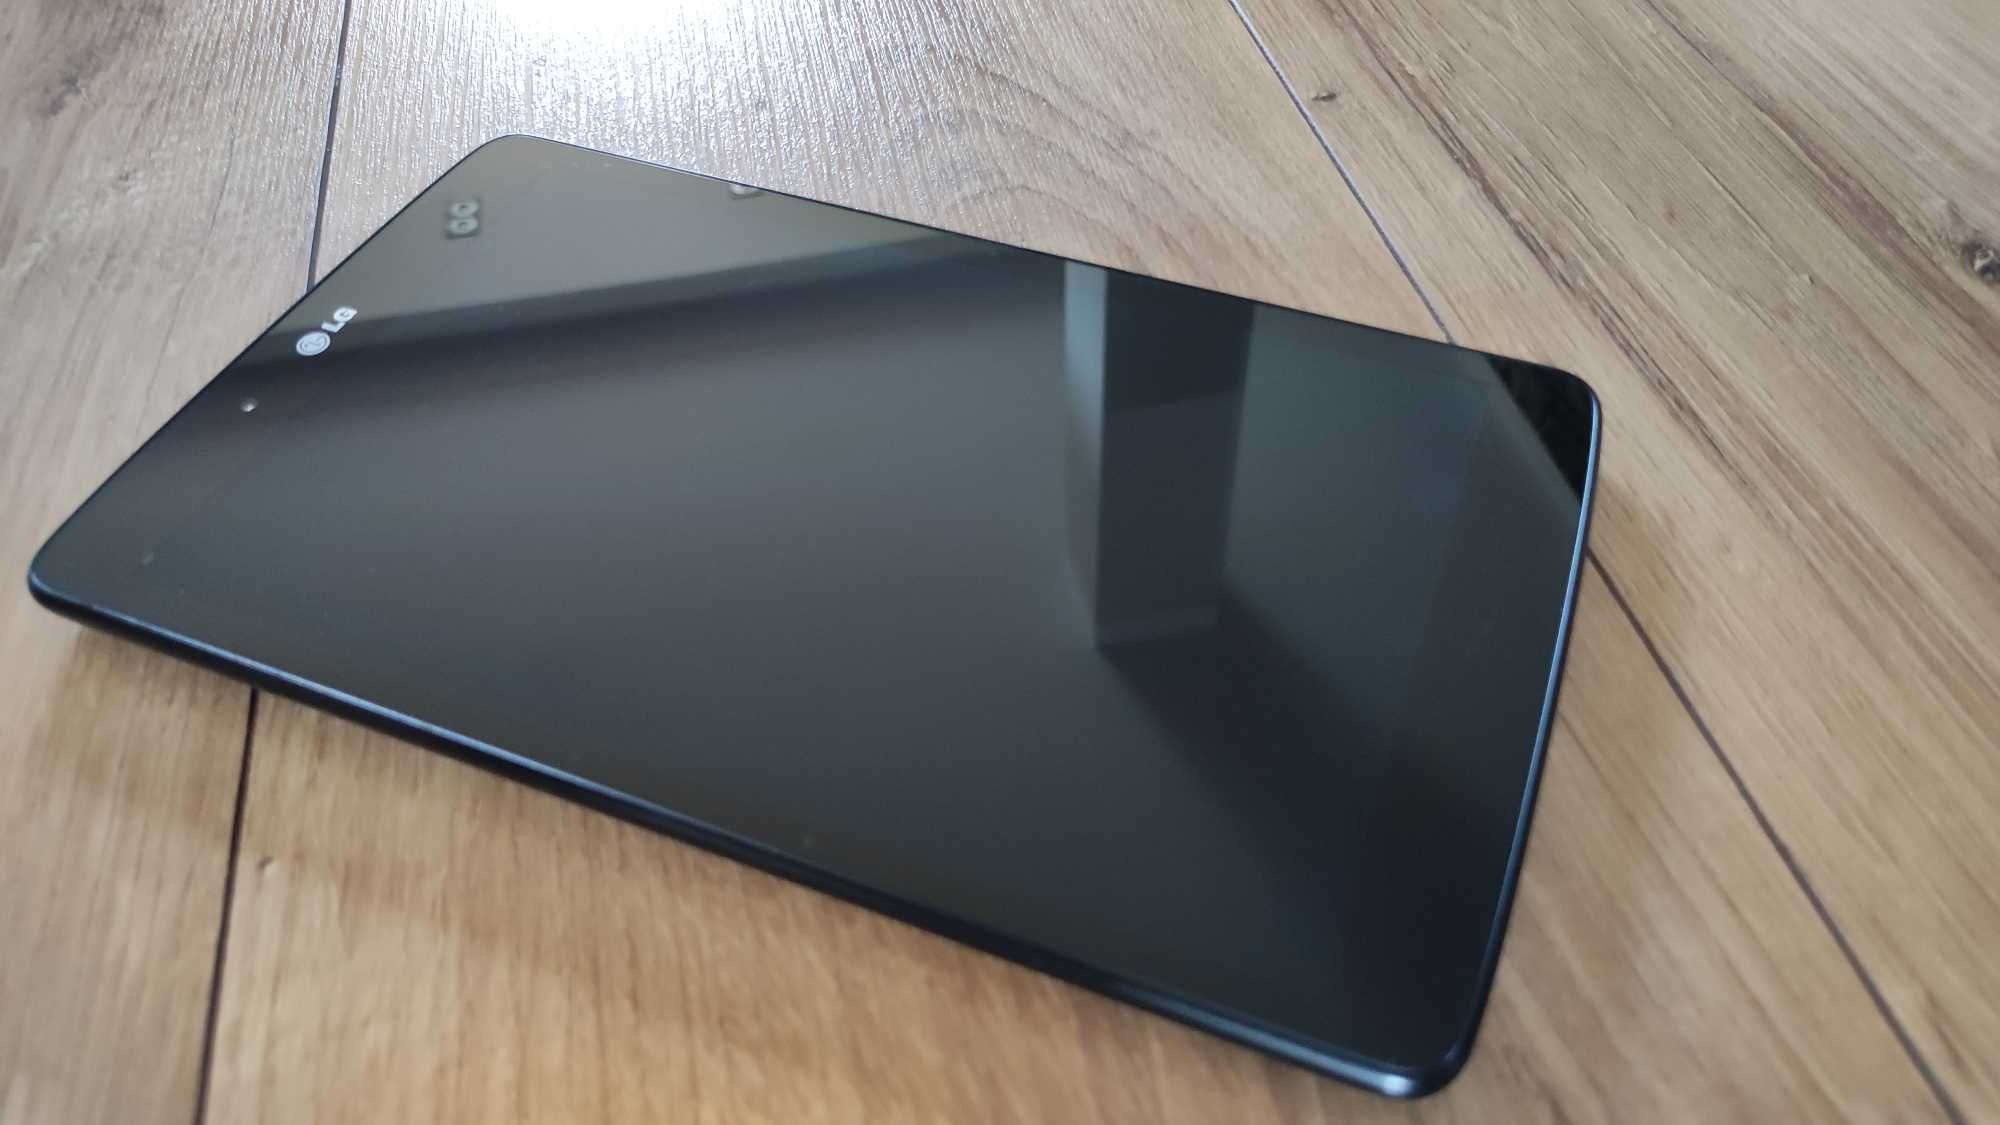 Tablet LG G Pad v490